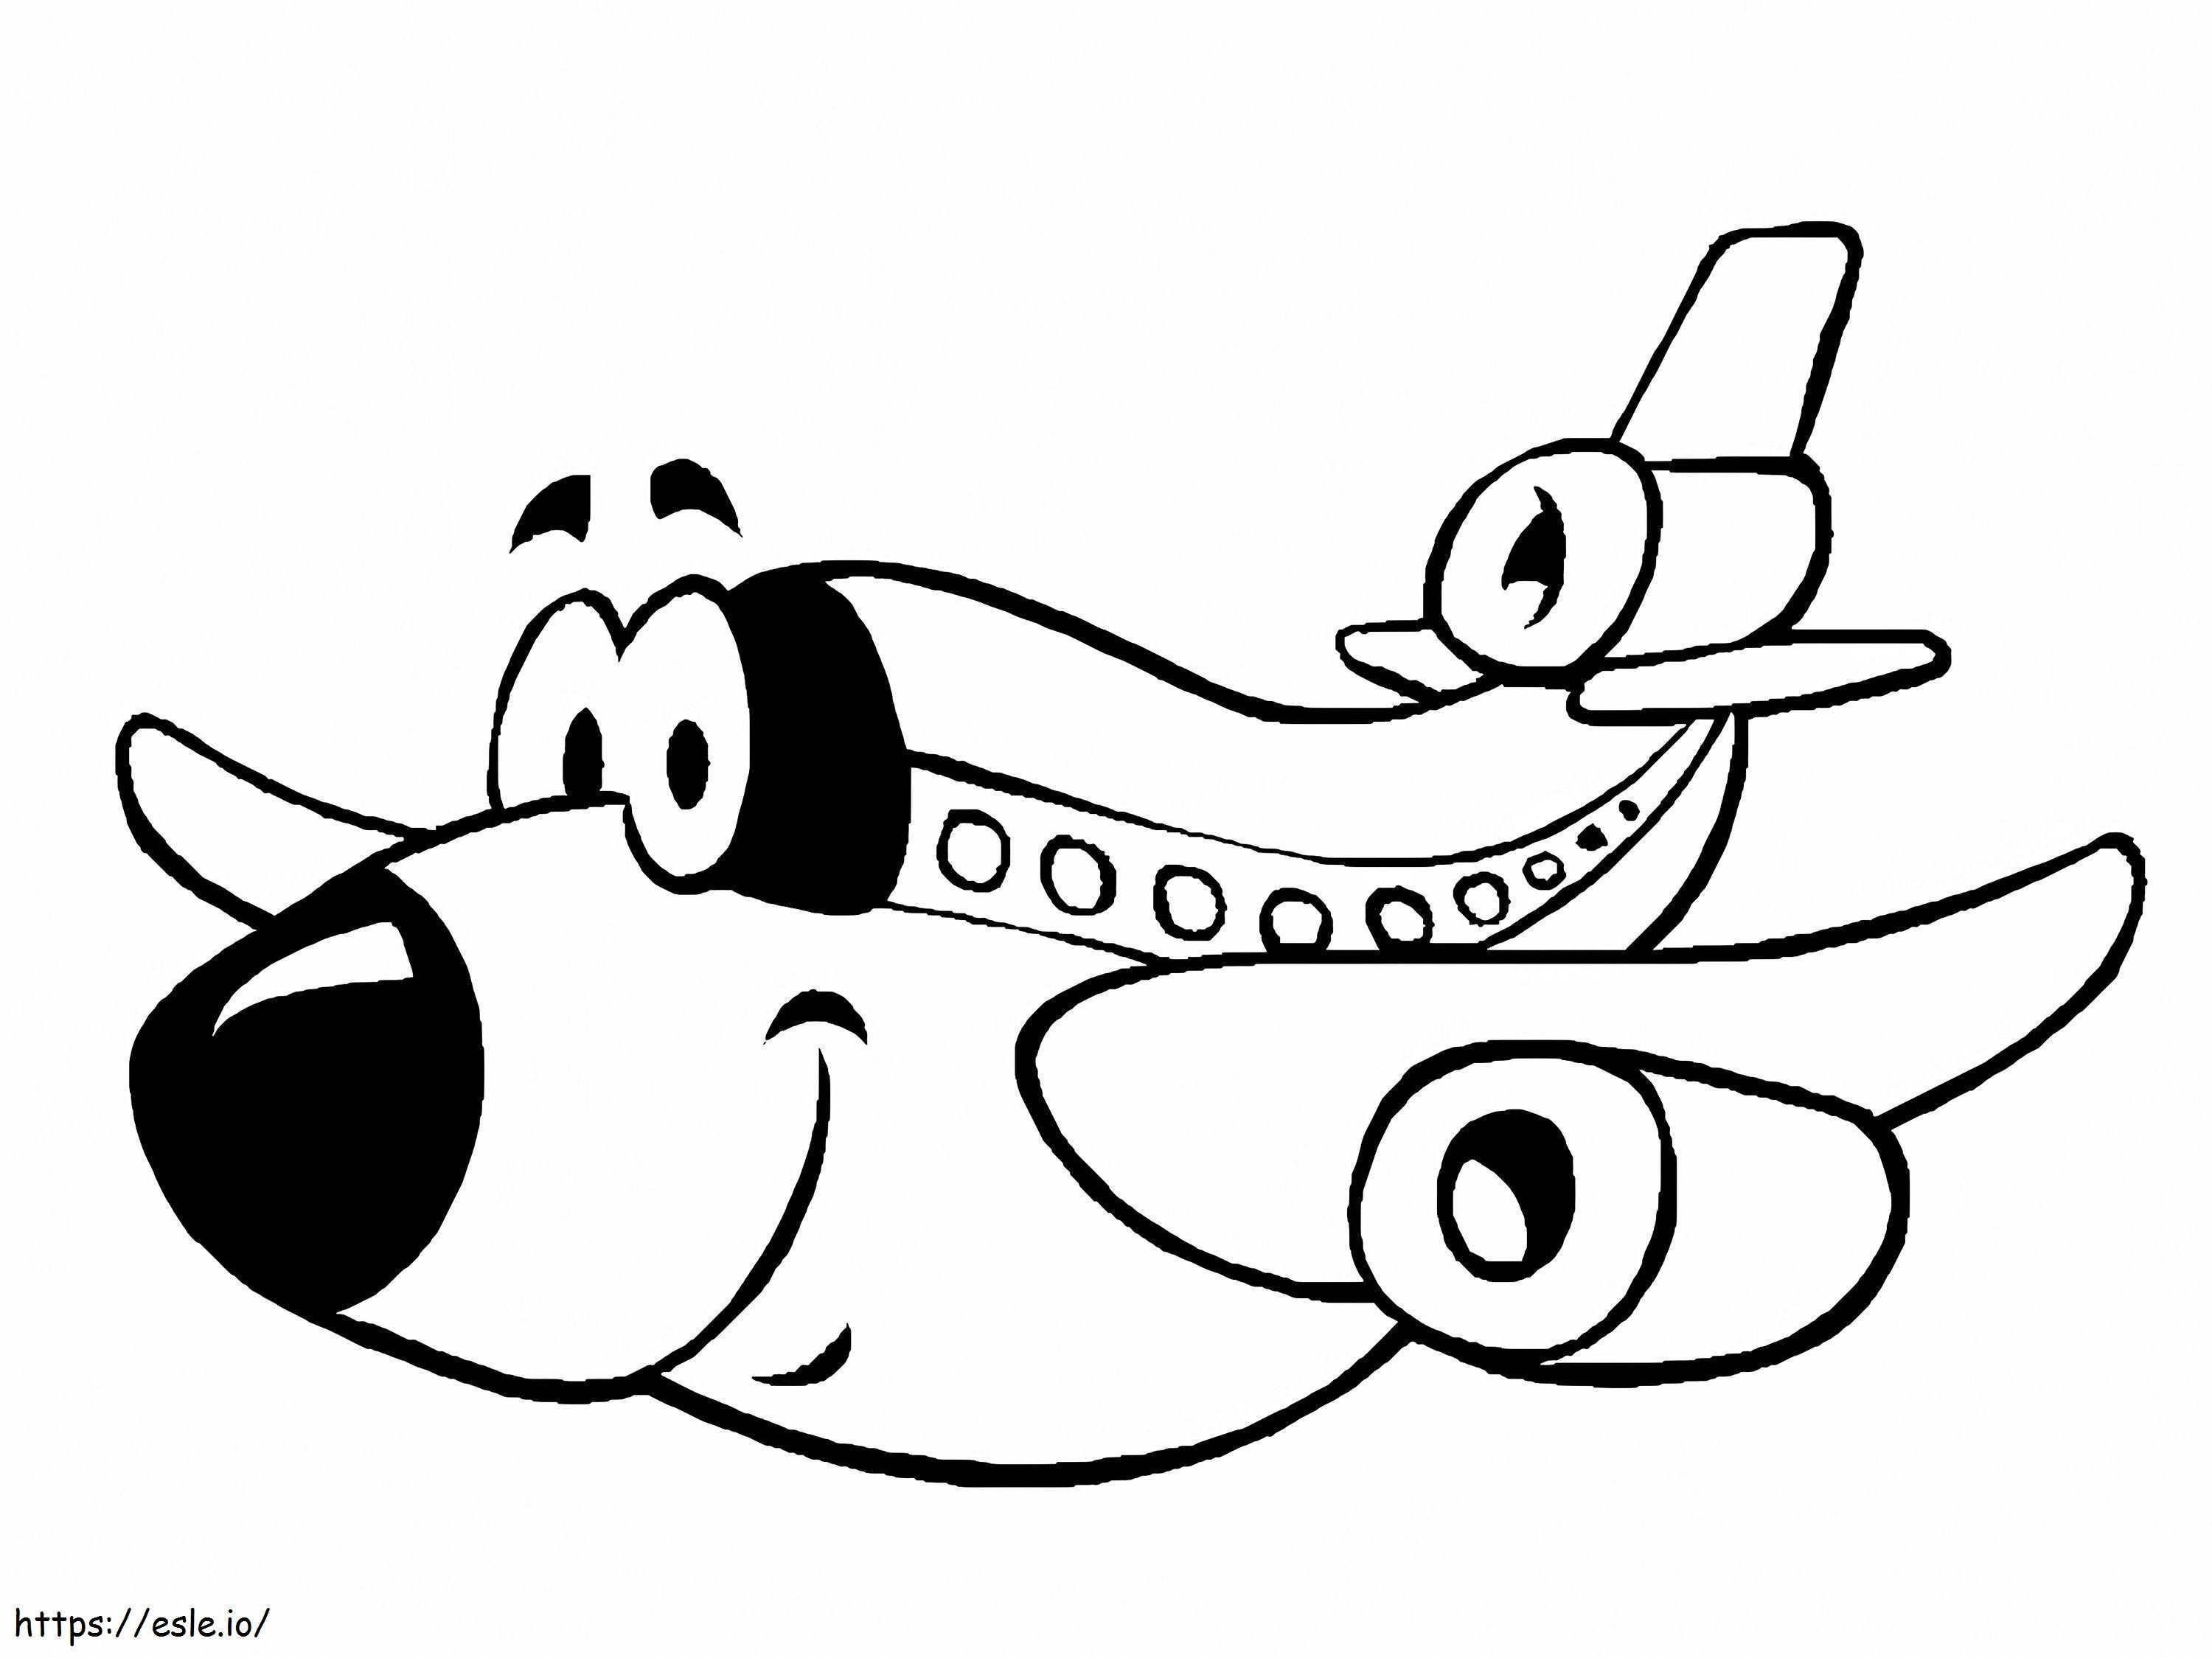  Samolot dla dzieci kolorowanka